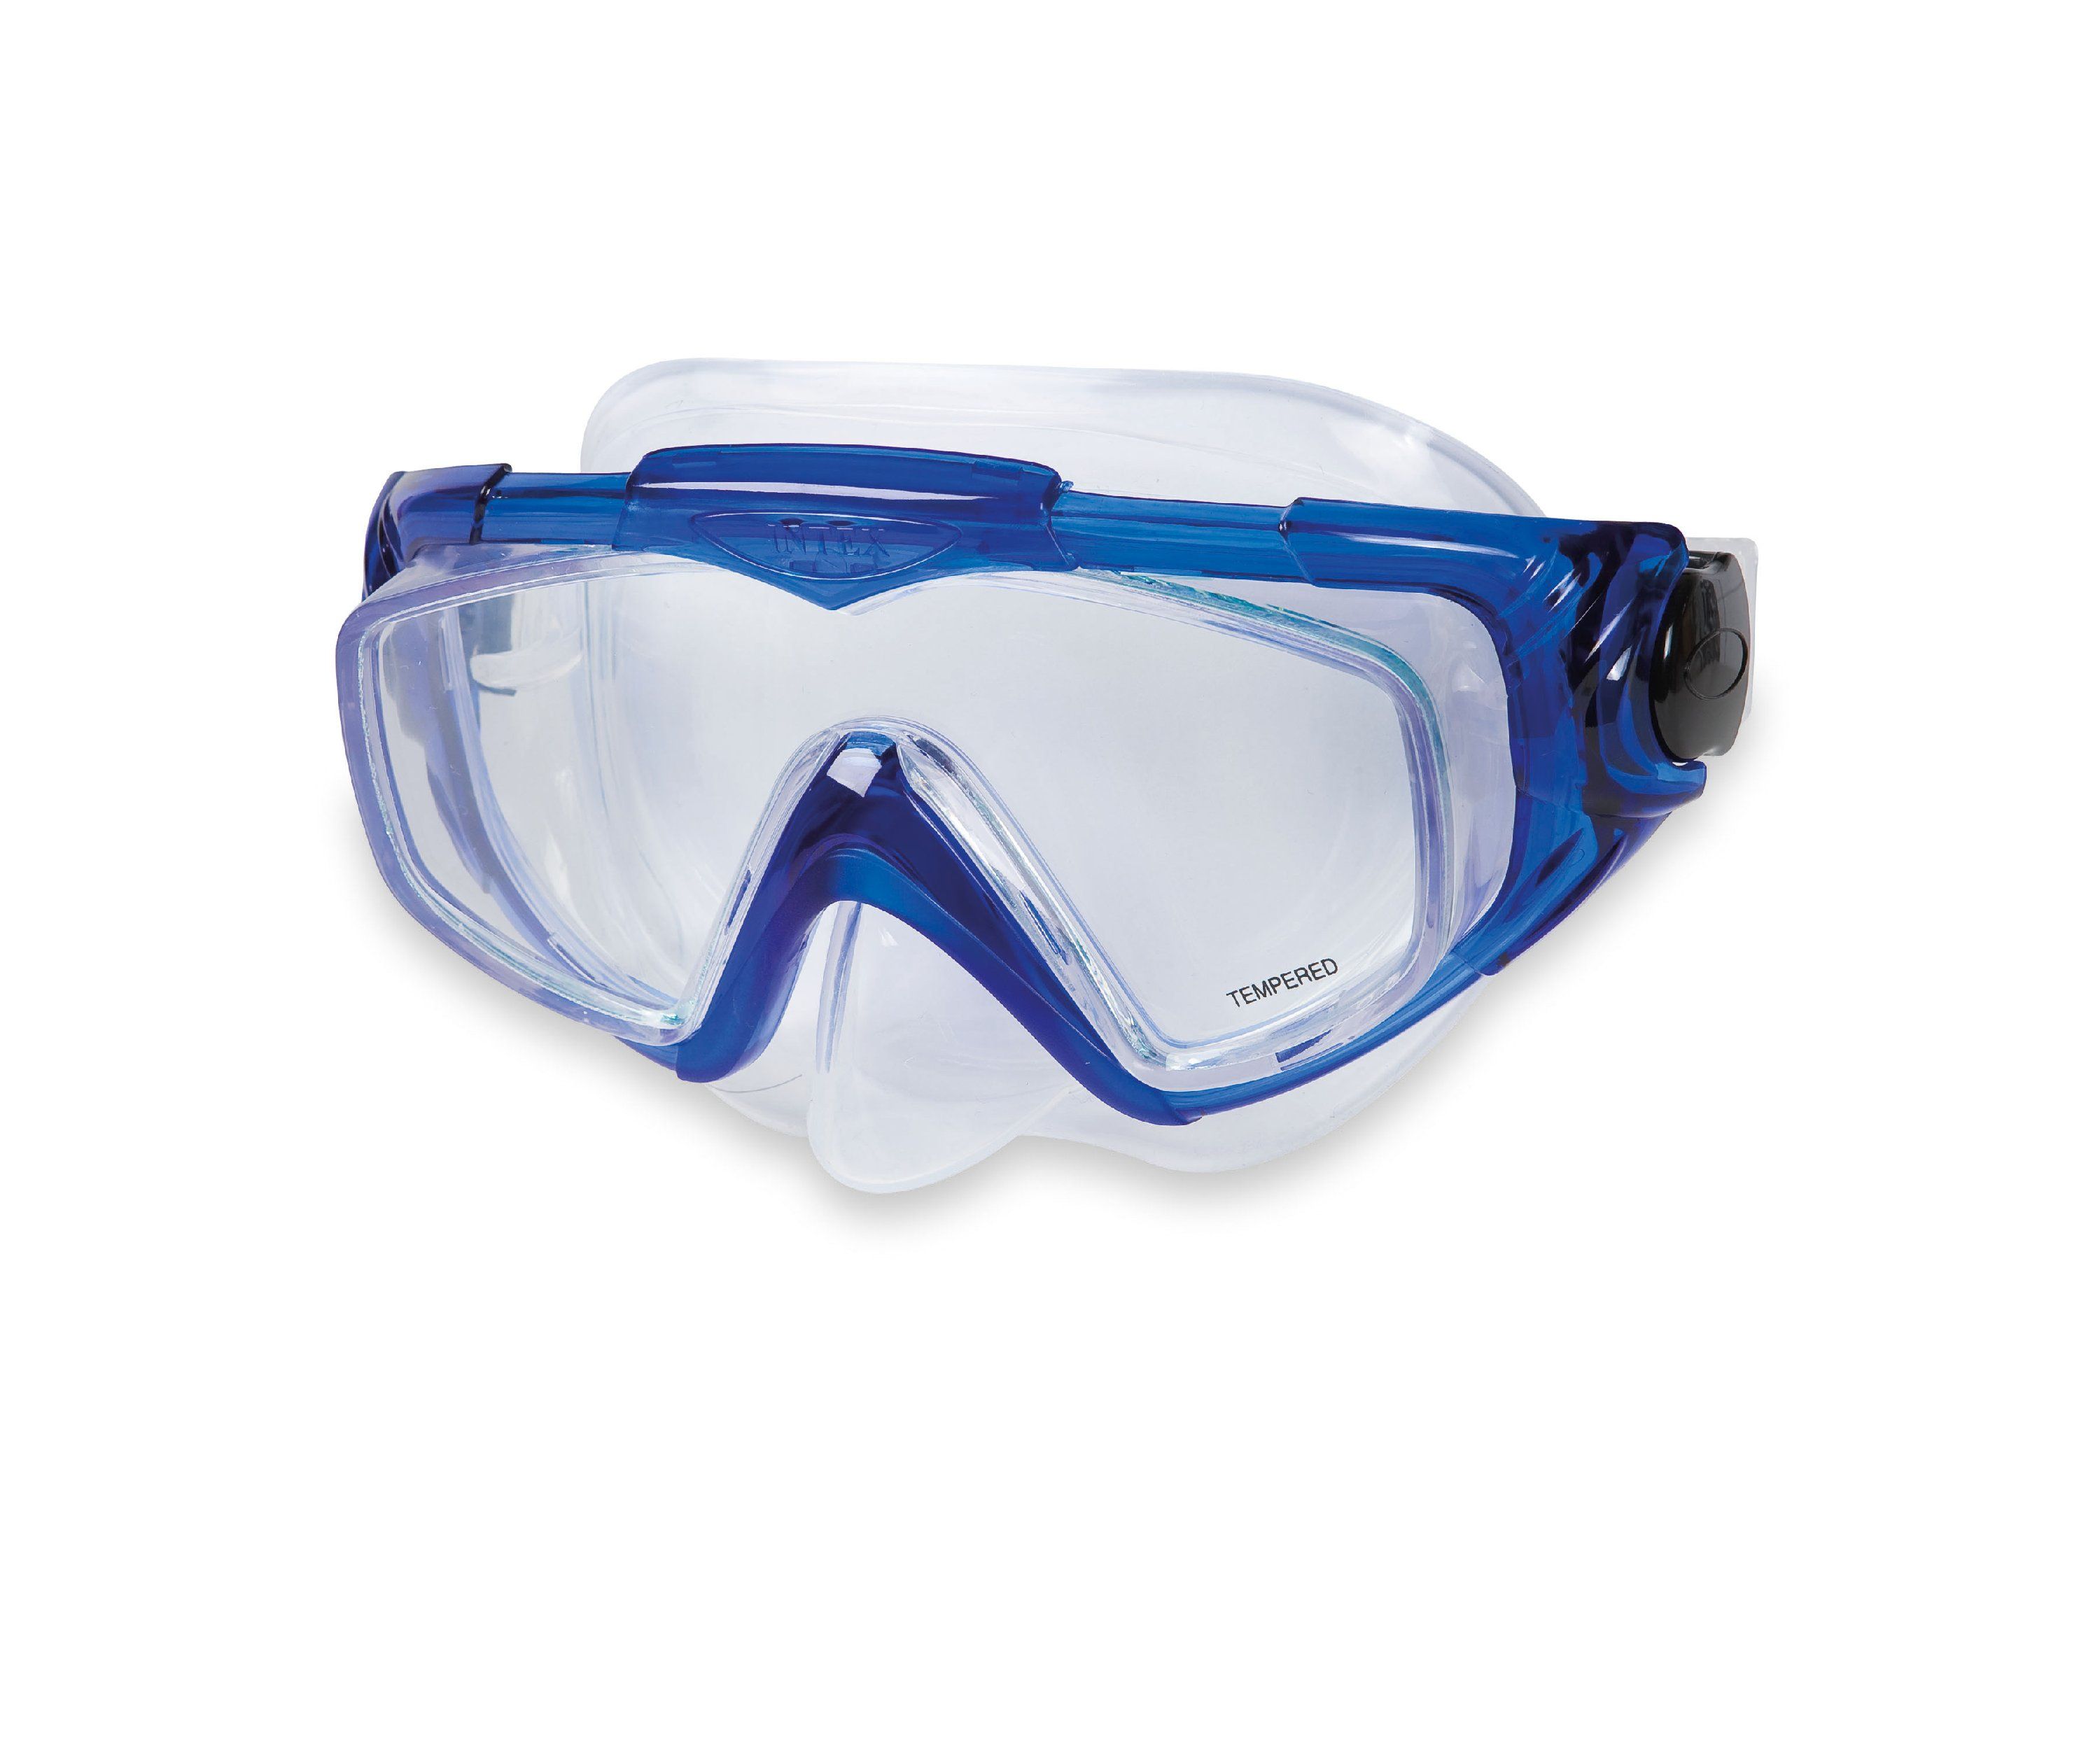 Маска плавательная. Маска для плавания Intex 55981. Маска для плавания Intex 55916. Intex маска для плавания. Маска Intex для плавания синяя.